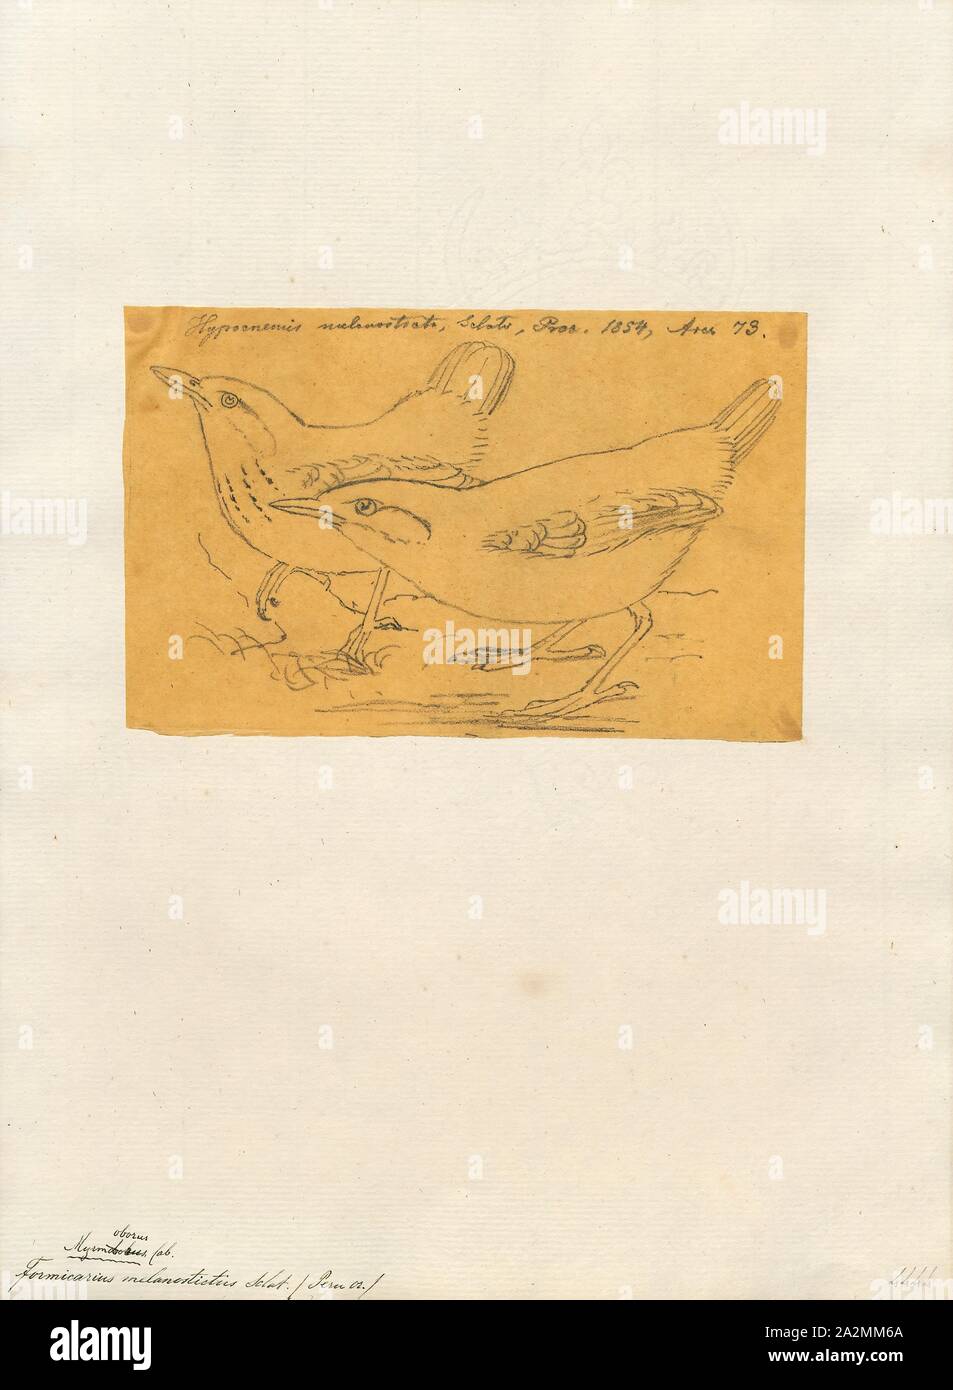 Formicarius melanostictus, Print, 1854 Stock Photo